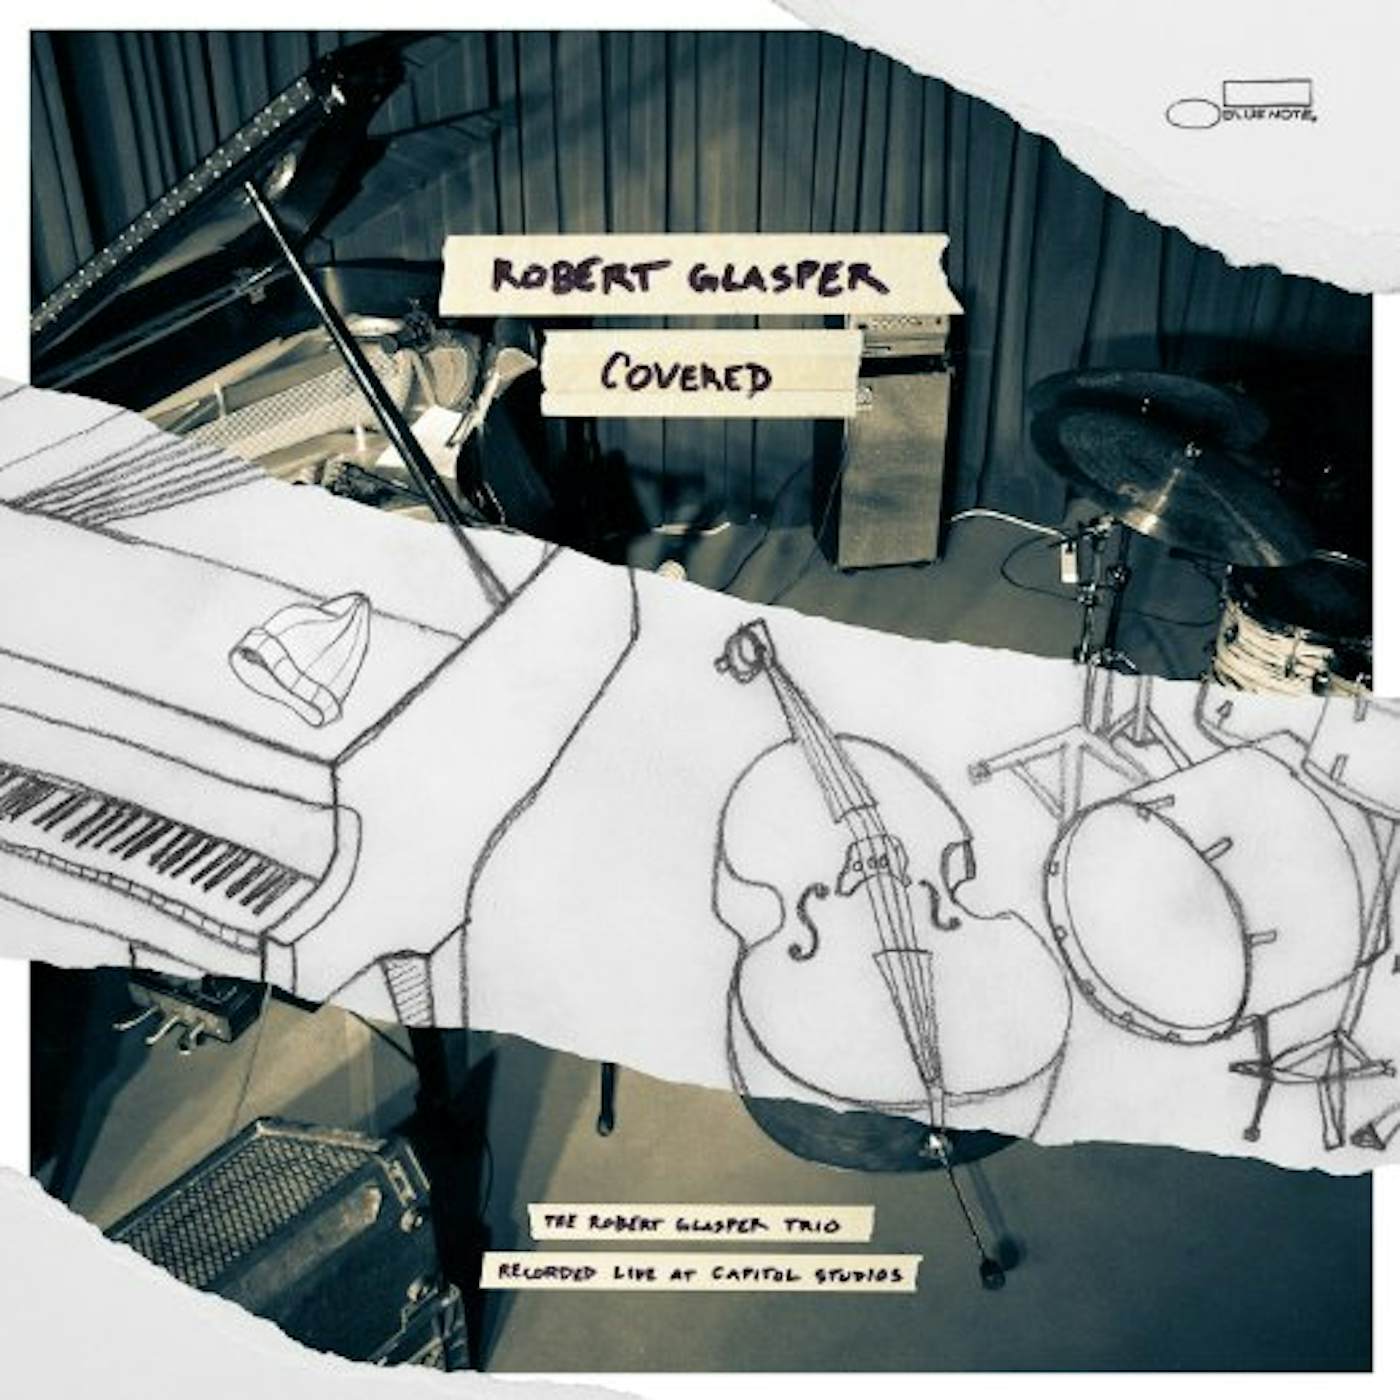 Robert Glasper COVERED (RECORDED LIVE AT CAPITOL STUDIOS) Vinyl Record